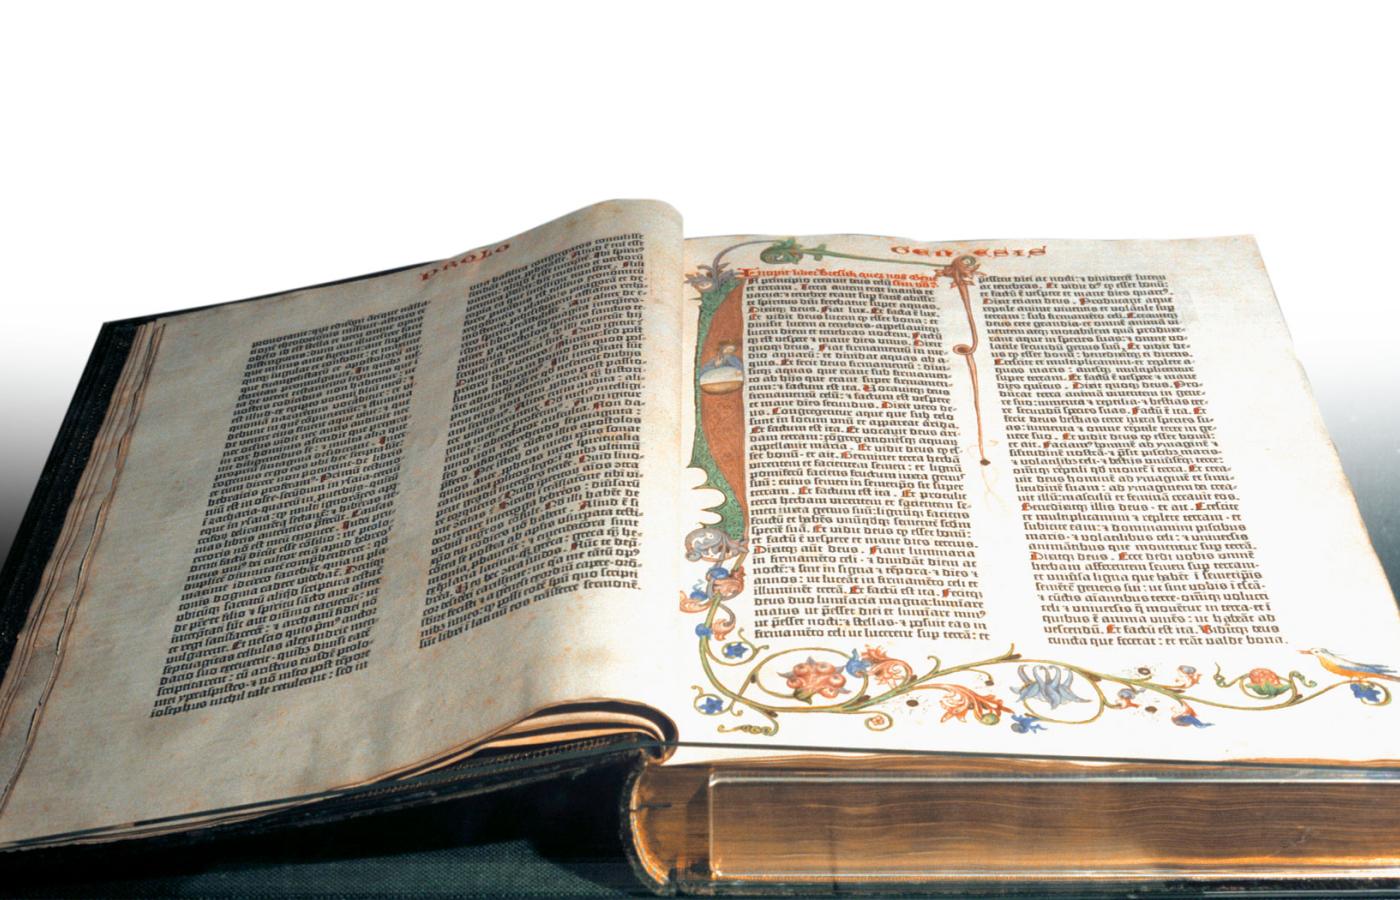 Słynna Biblia Gutenberga z połowy XV w. wydrukowana z użyciem ruchomej czcionki.